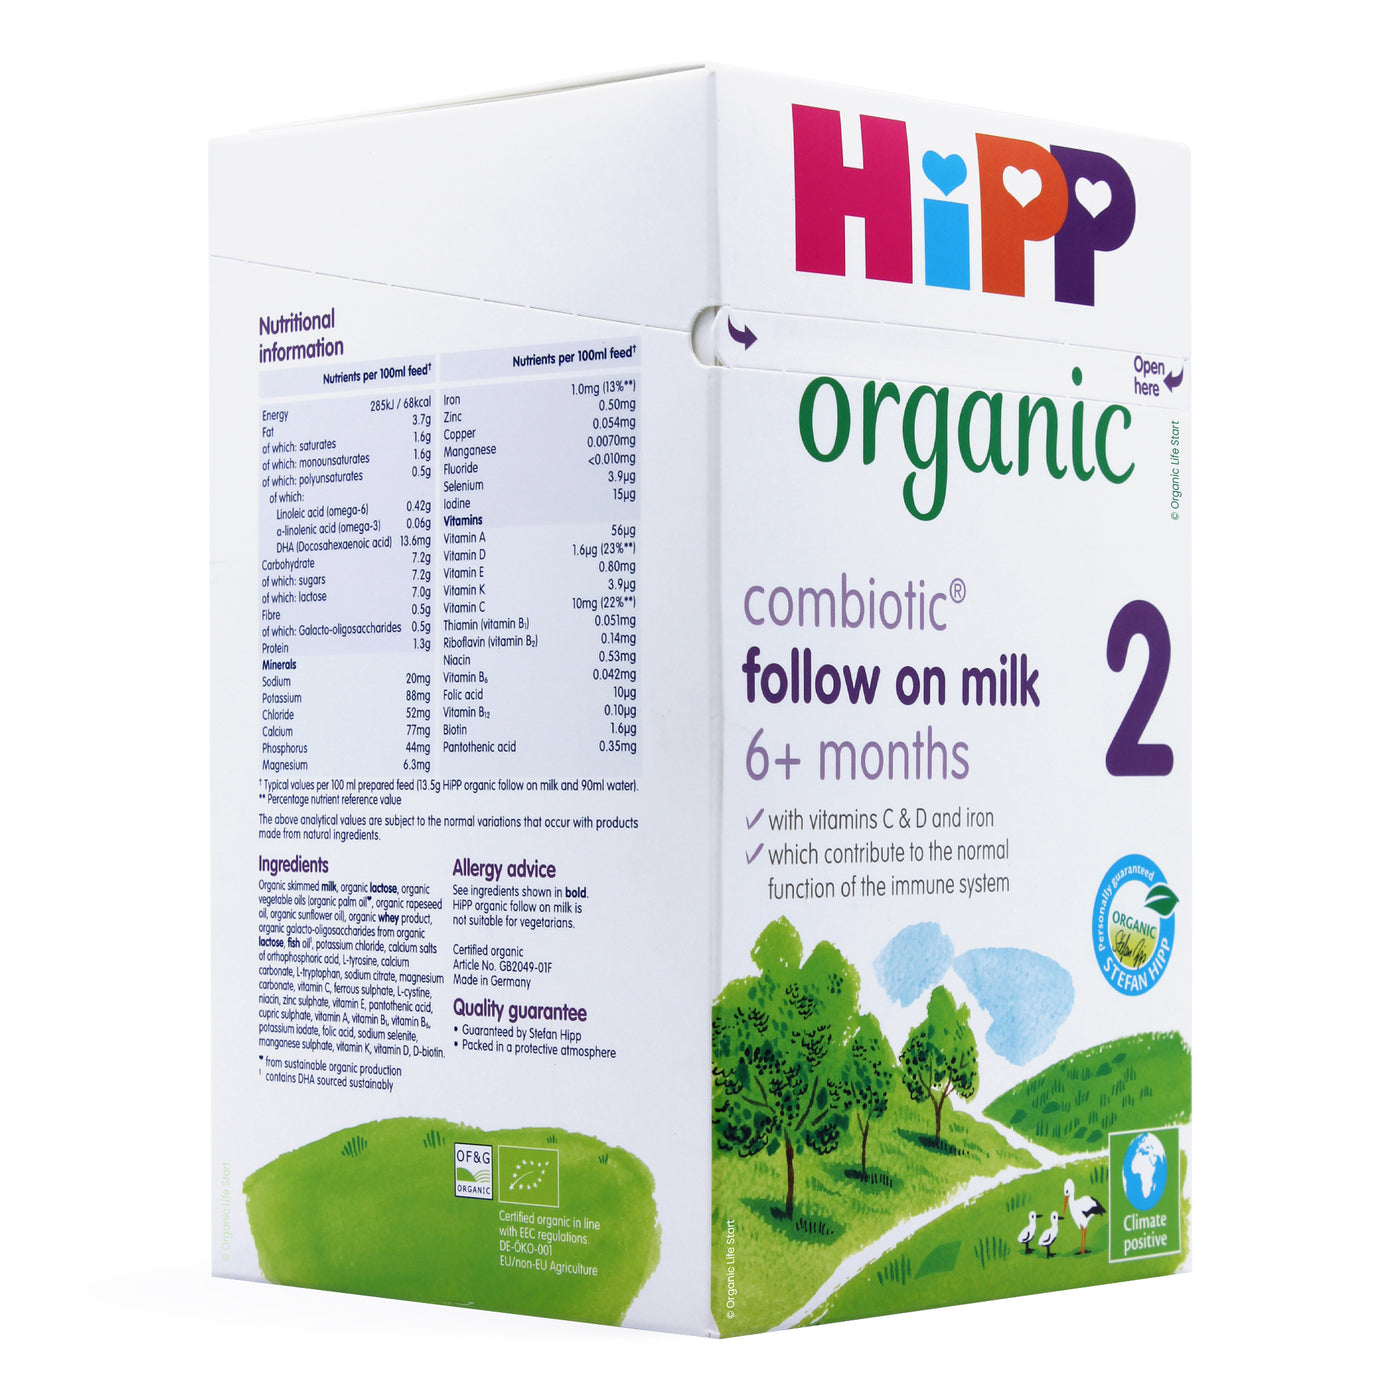 HiPP 2 Organic